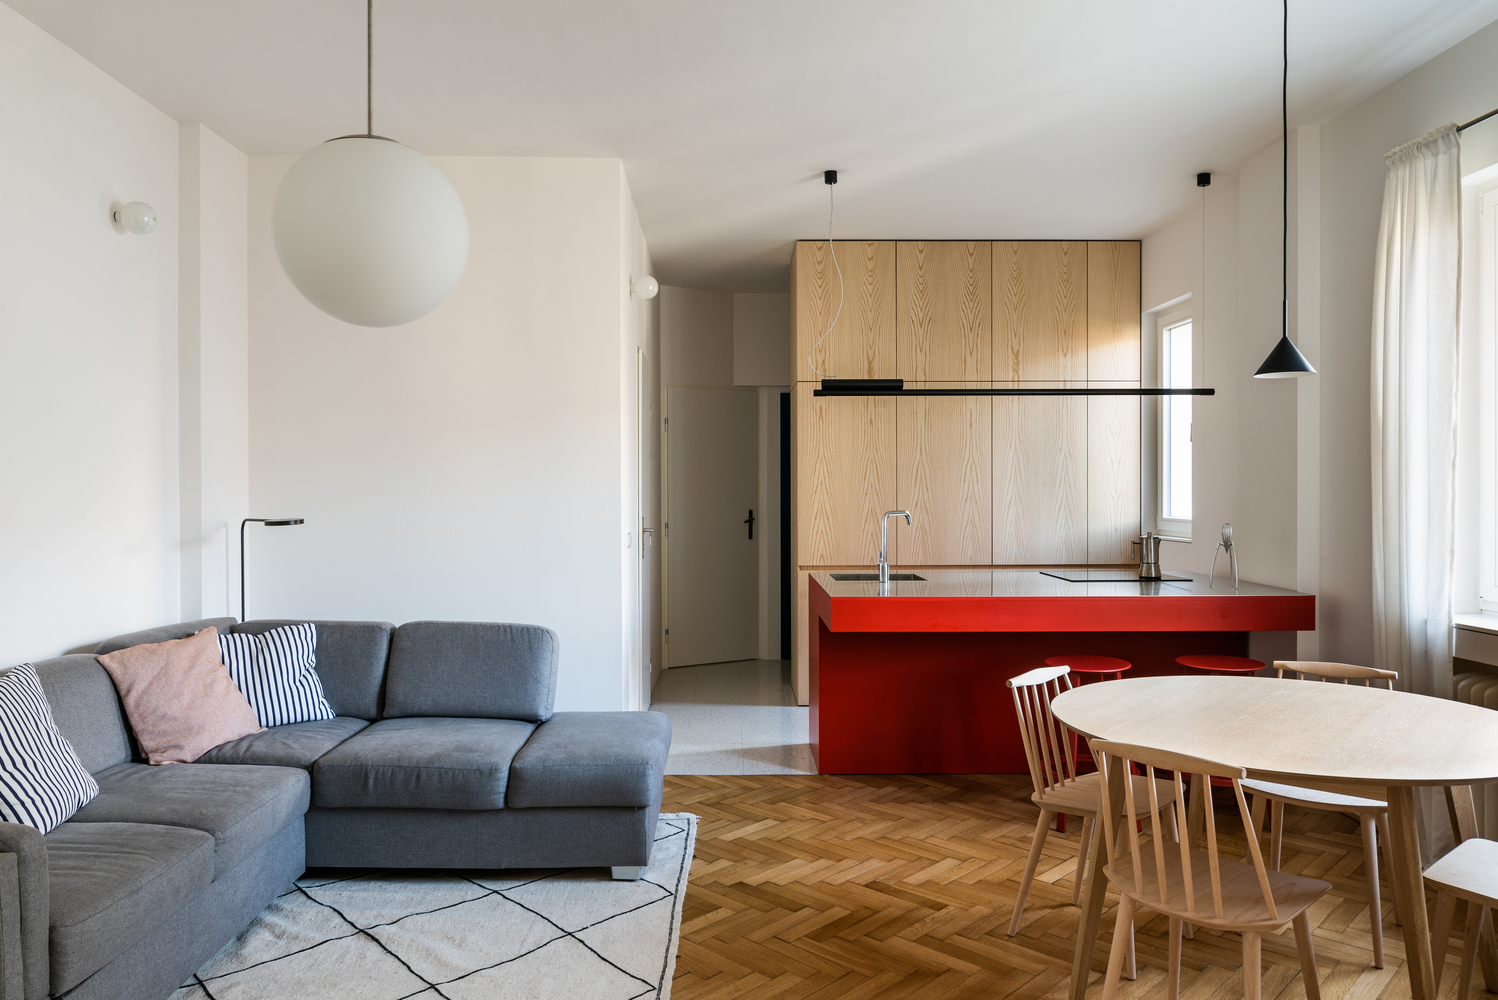 Trong căn hộ 20m2, phòng khách, bếp và khu vực ăn uống nằm trong cùng một không gian mở liên thông nhưng vẫn có sự tách biệt nhất định nhờ màu sắc nội thất.